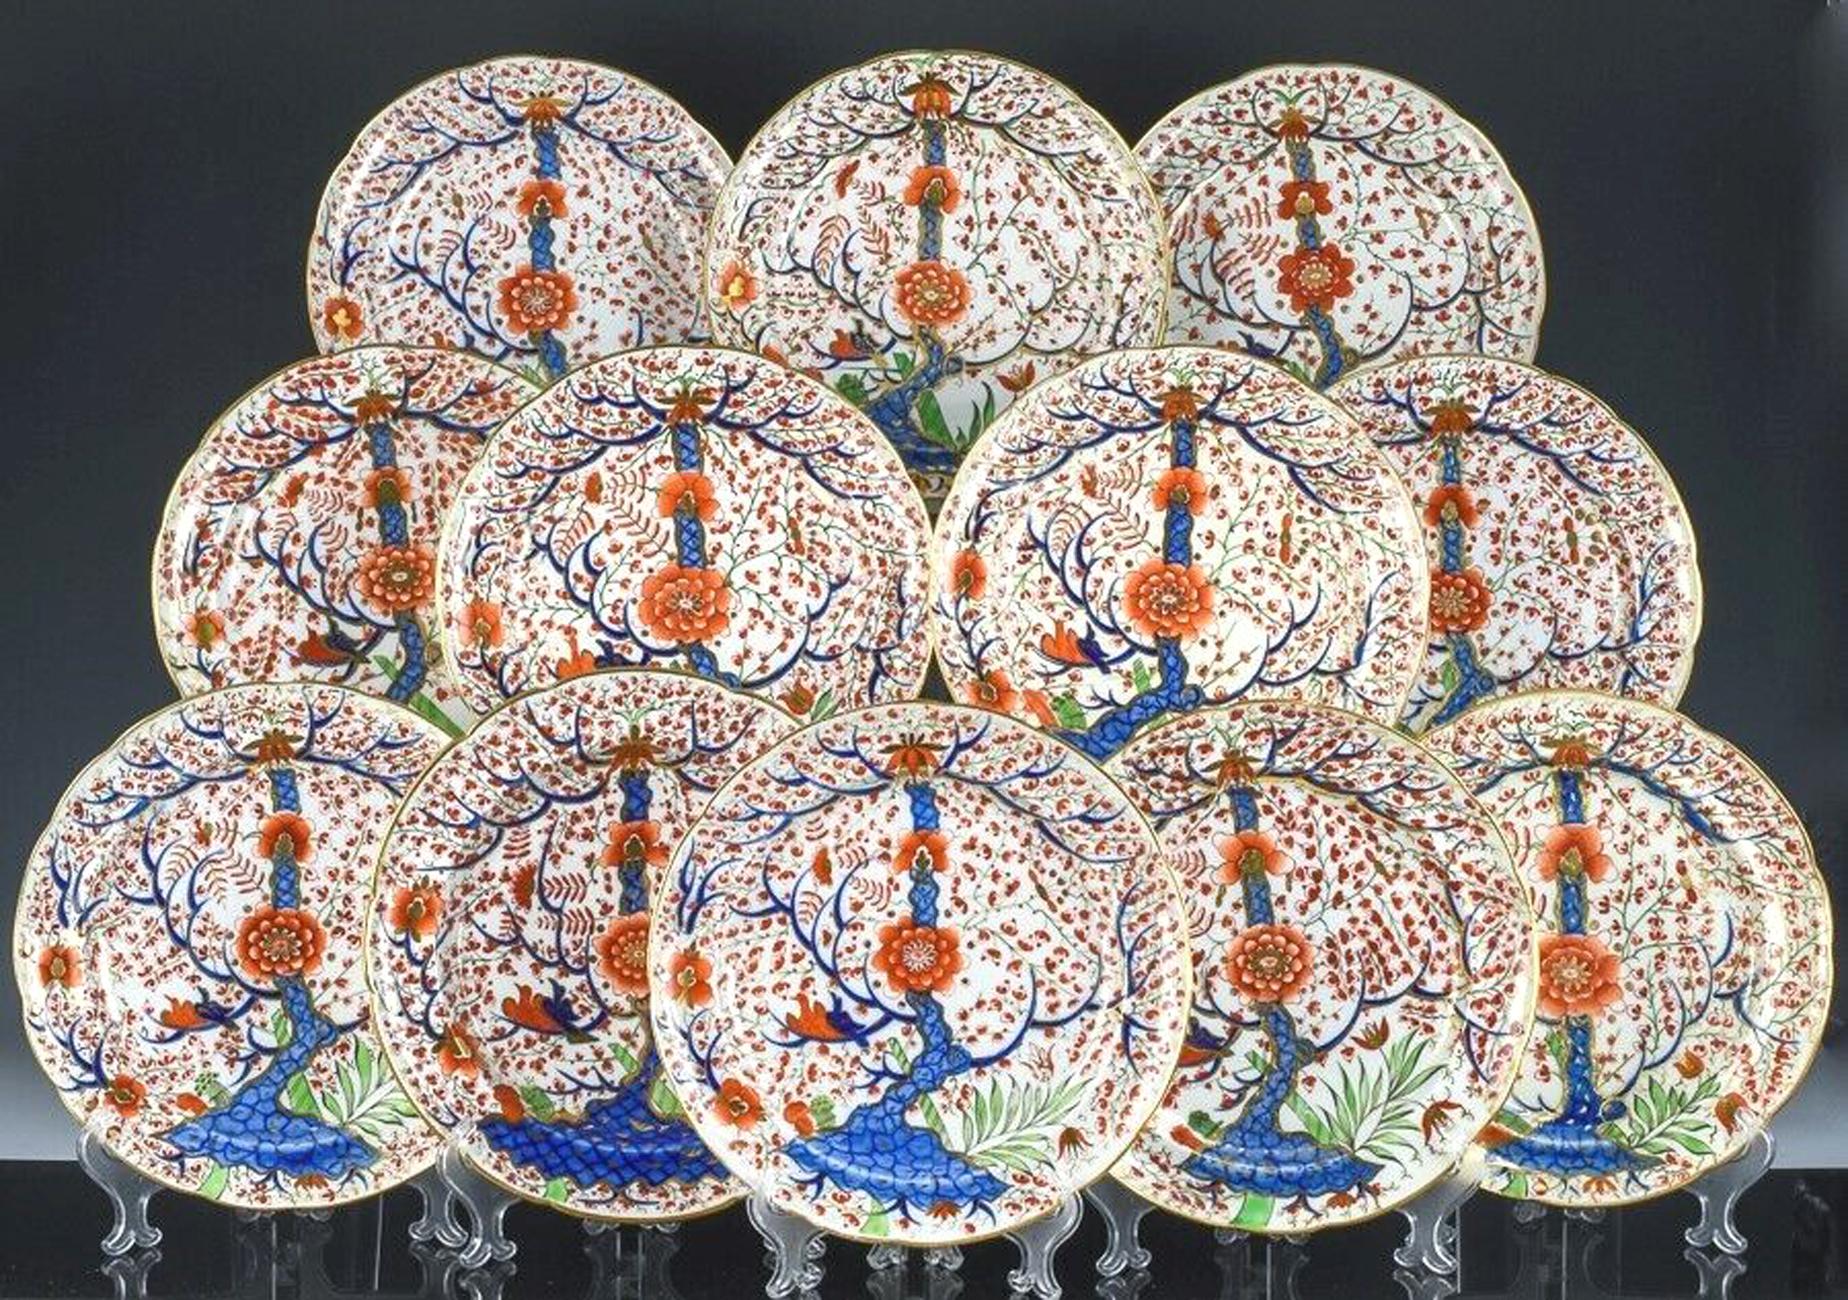 Ensemble de douze assiettes à dîner en porcelaine de Chamberlain Worcester,
Motif de l'arbre de vie,
Vers 1818-1822

Les assiettes en porcelaine Chamberlain Worcester Tree of Life sont peintes d'un motif orné et coloré connu sous le nom de 